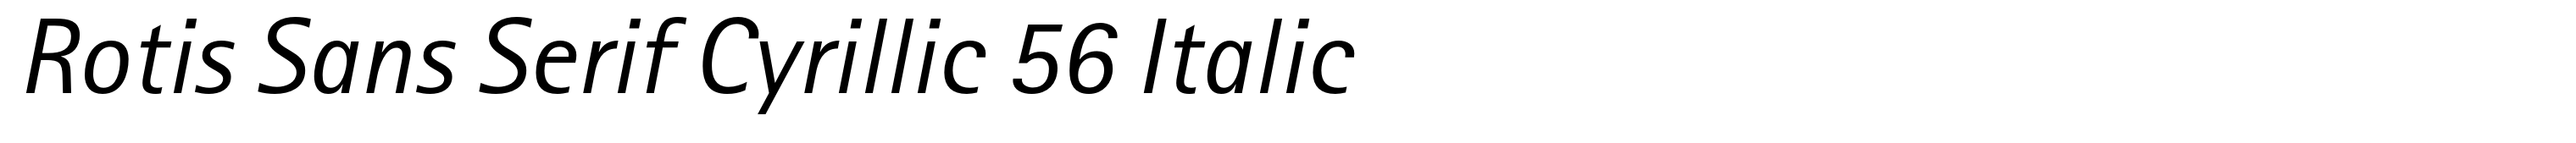 Rotis Sans Serif Cyrillic 56 Italic